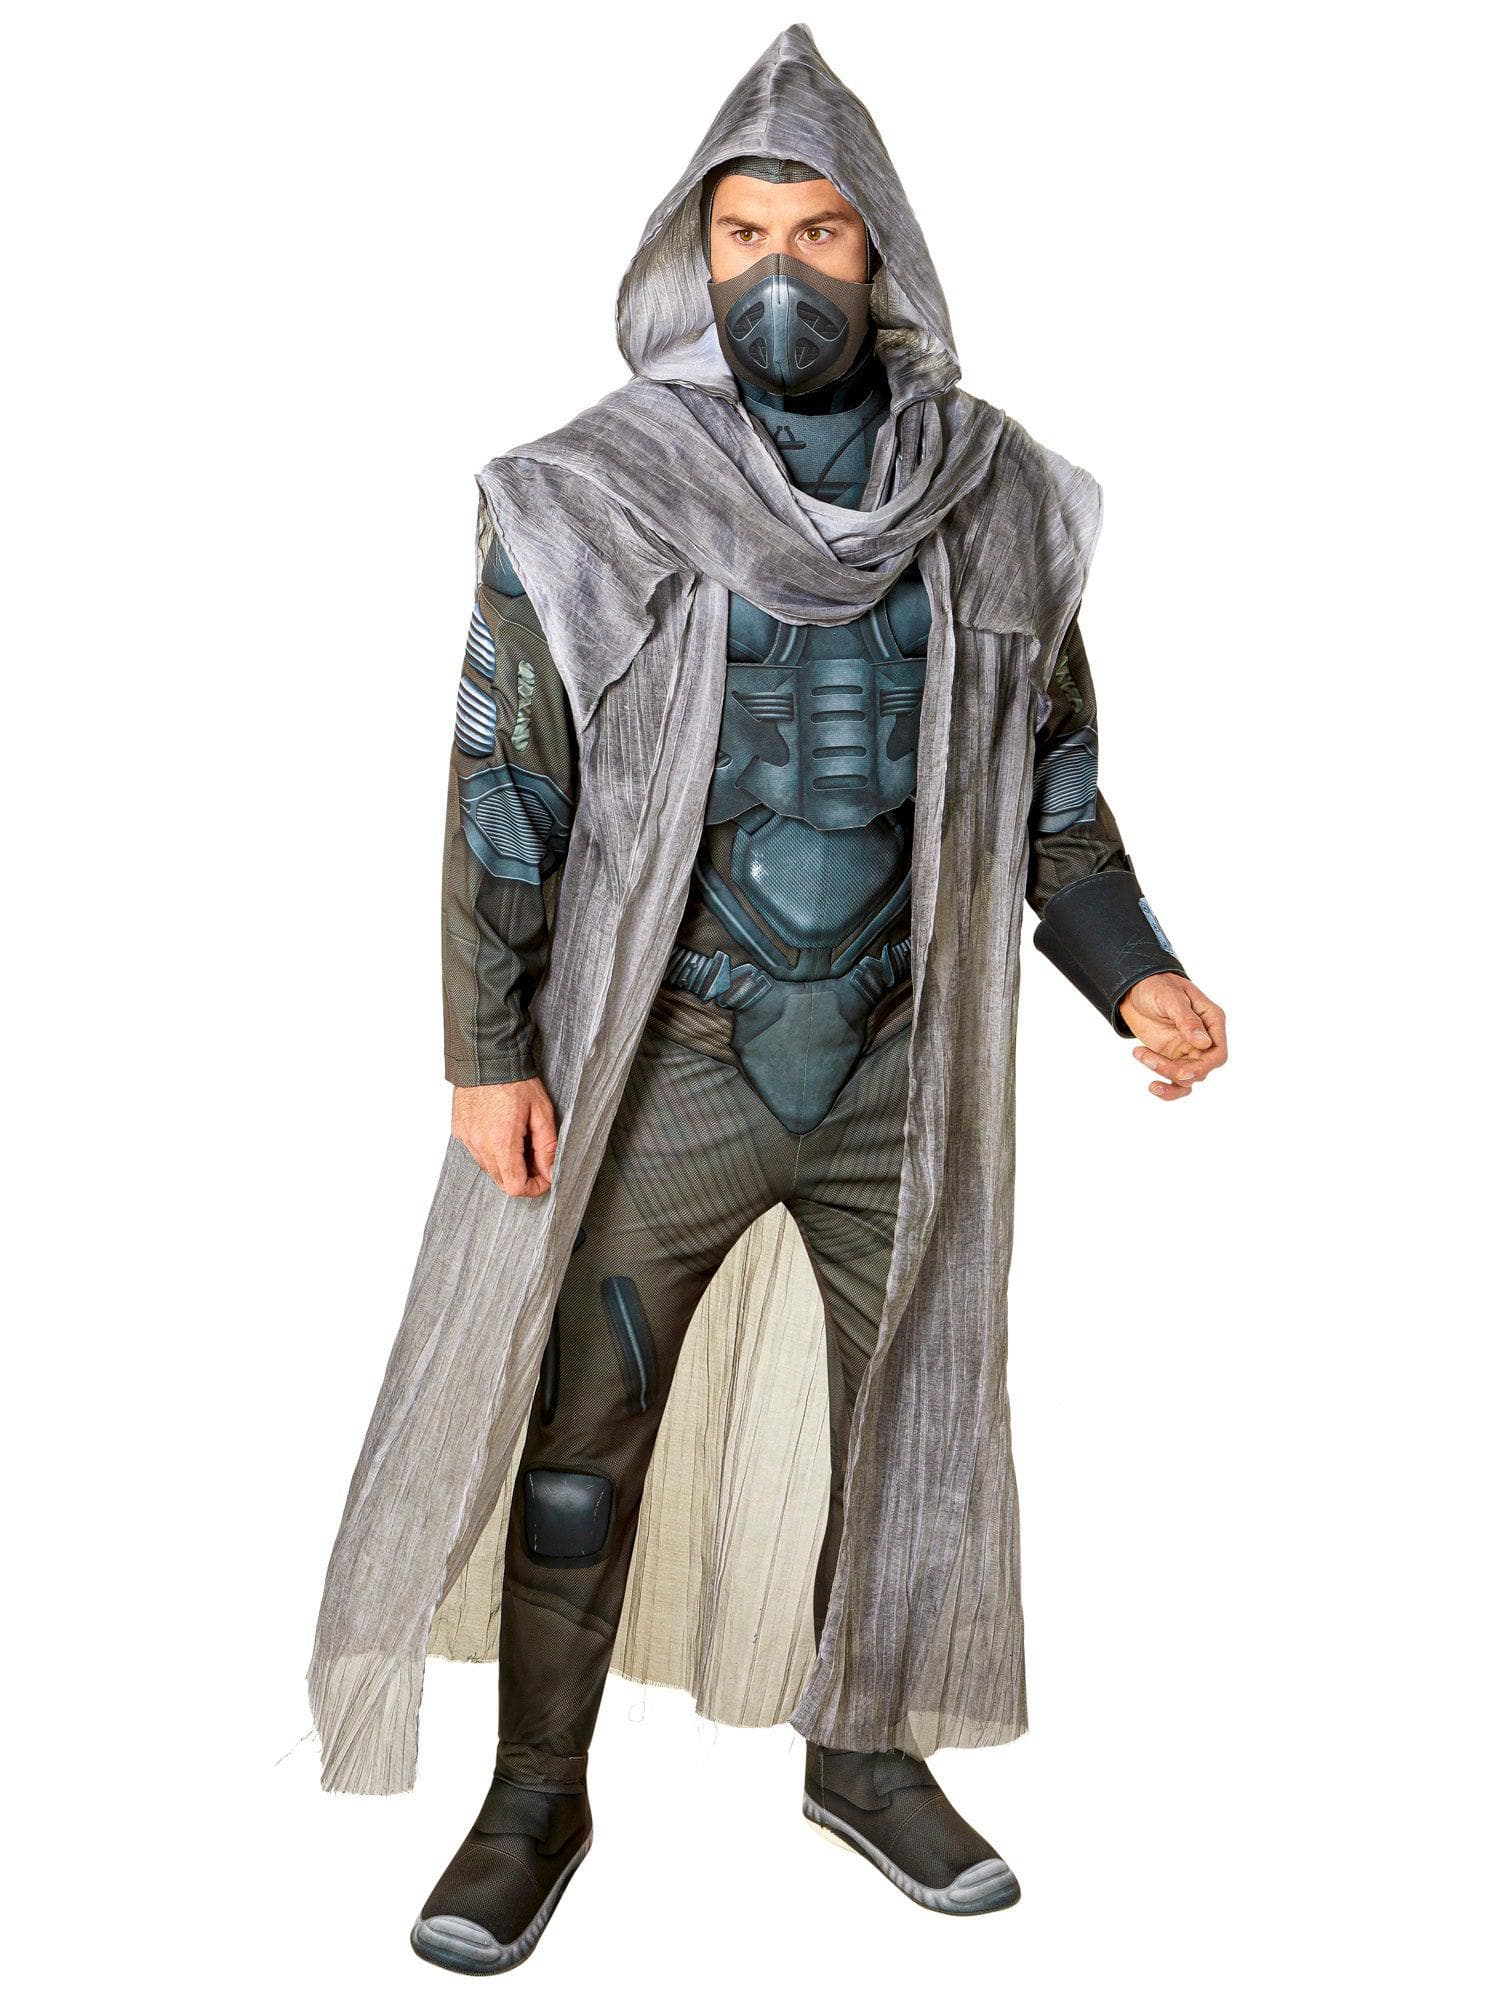 Dune Paul Atreides Adult Costume - costumes.com